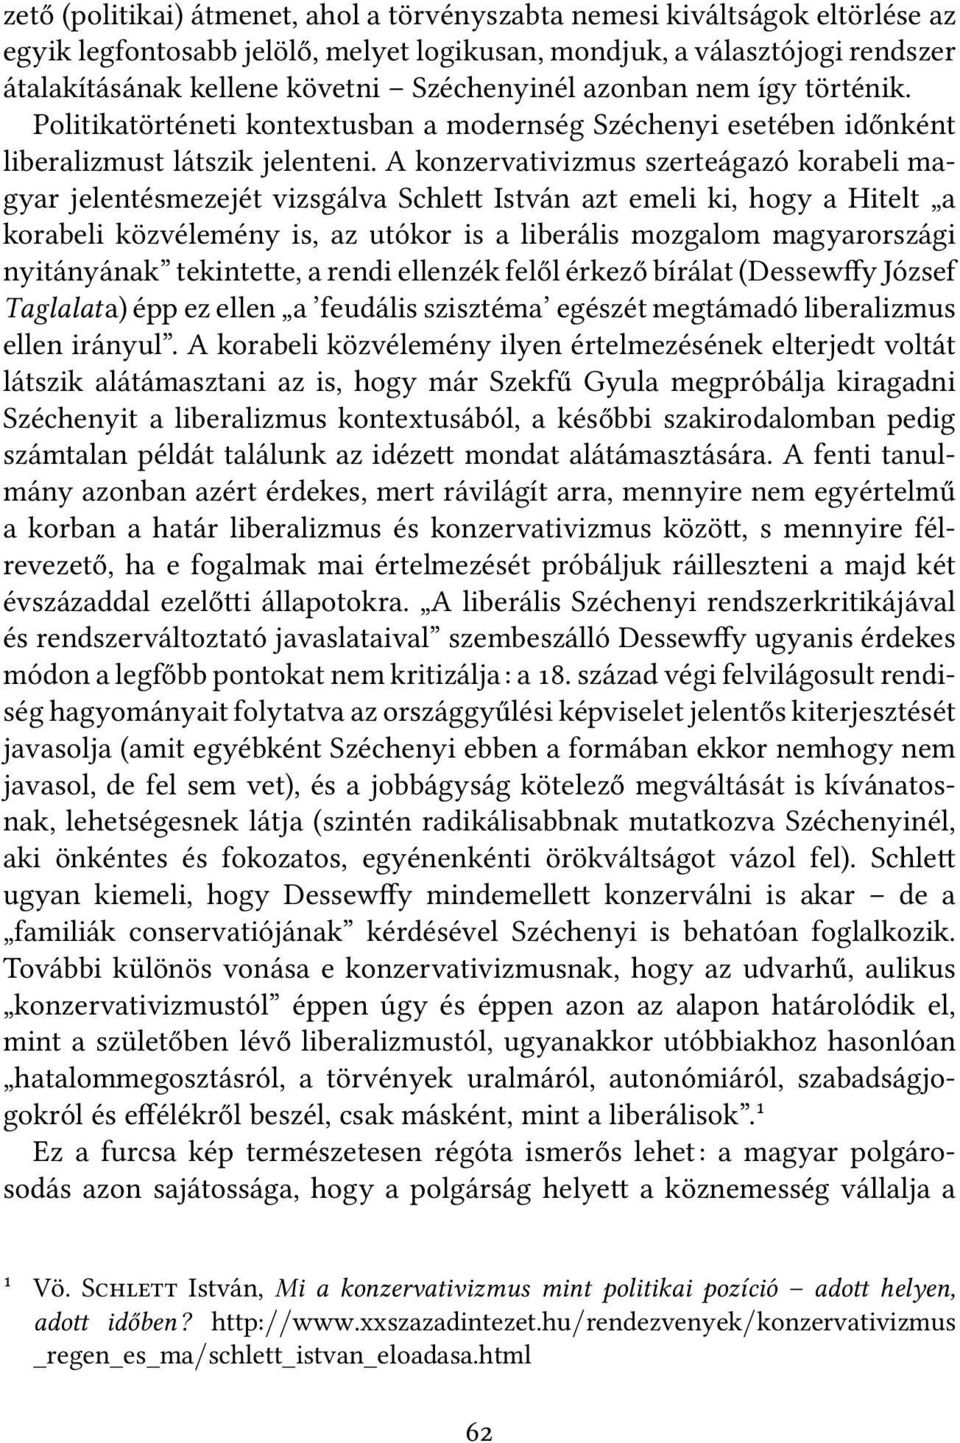 A konzervativizmus szerteágazó korabeli magyar jelentésmezejét vizsgálva Schle István azt emeli ki, hogy a Hitelt a korabeli közvélemény is, az utókor is a liberális mozgalom magyarországi